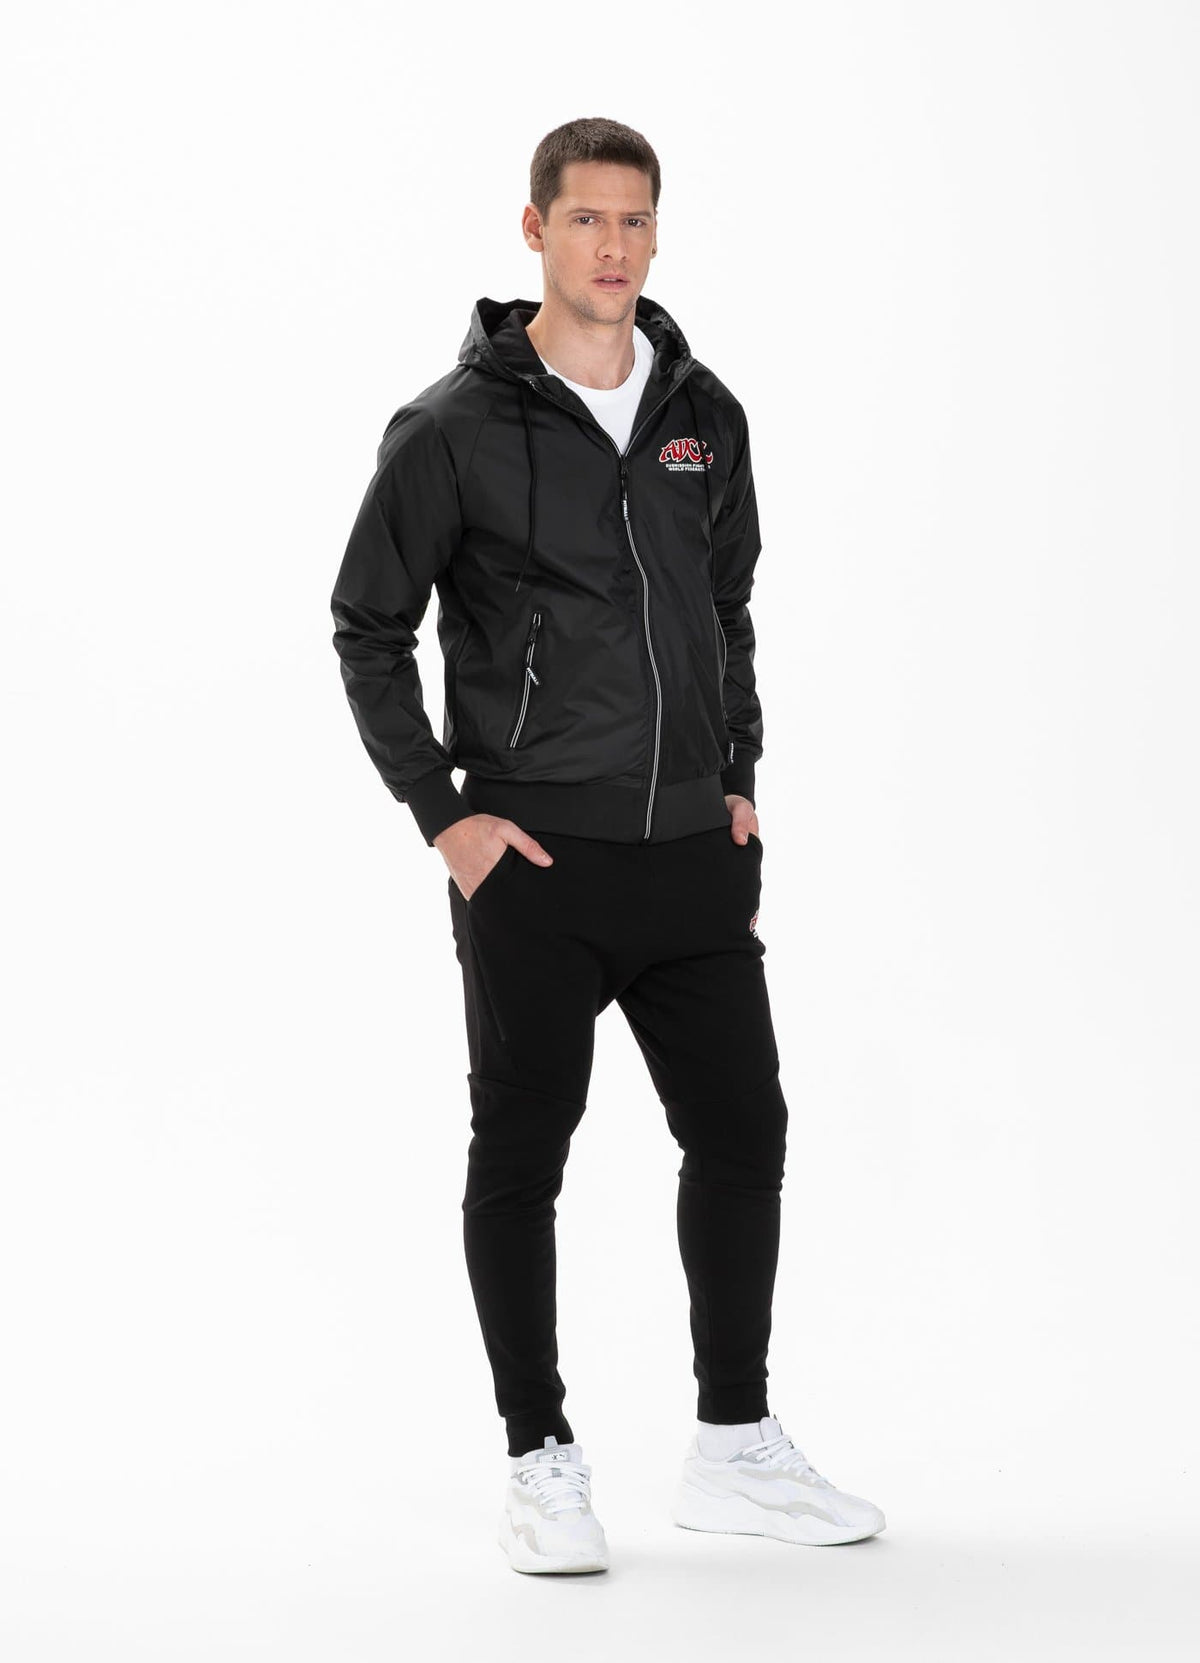 Nylon Jacket ADCC Black - Pitbull West Coast International Store 